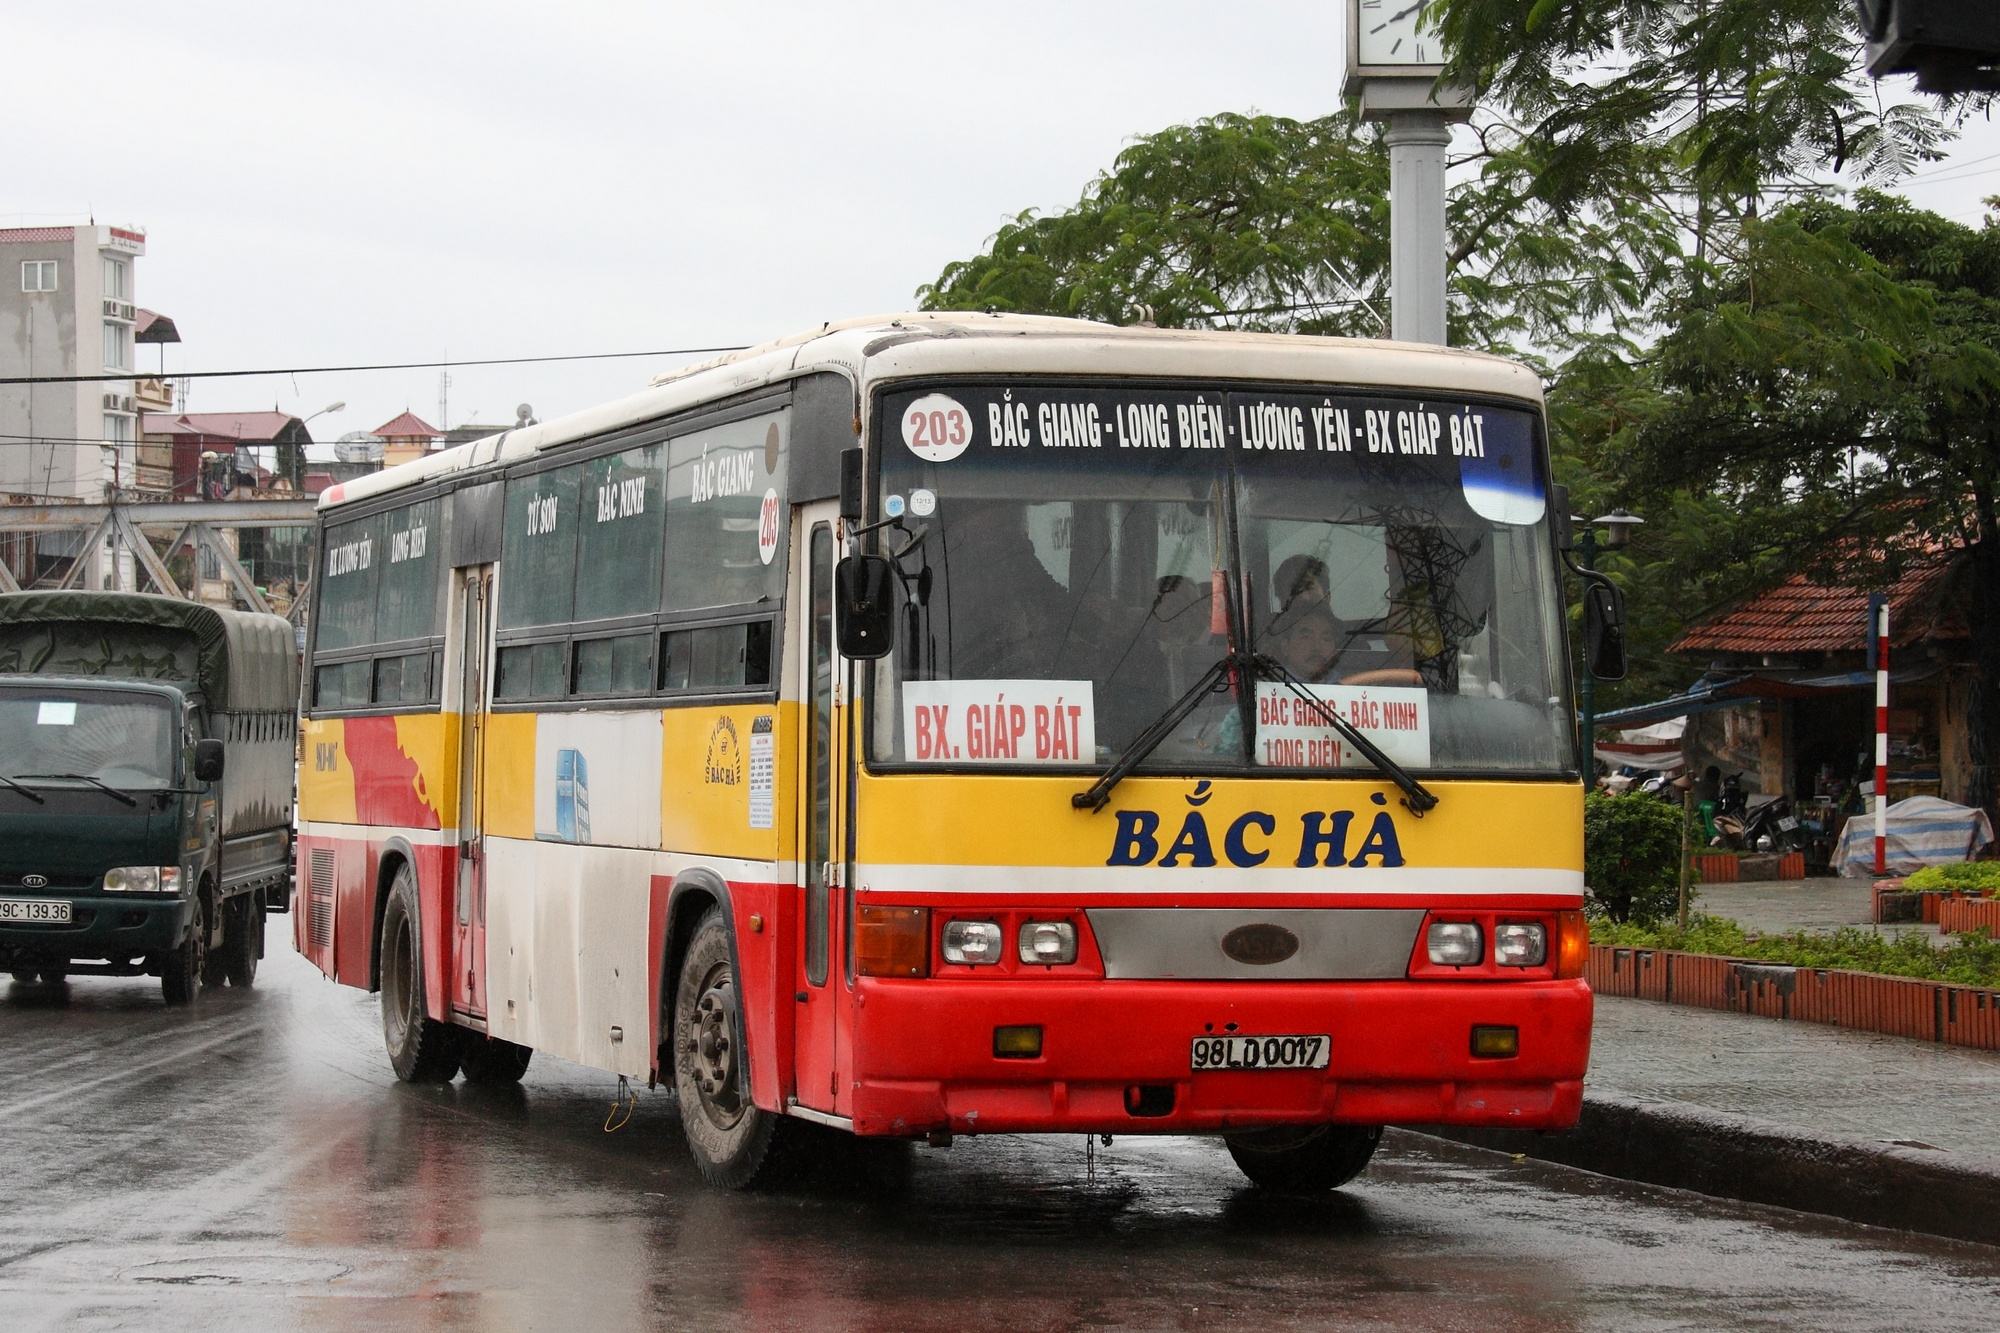 Danh sách các tuyến xe bus tới các đại học, cao đẳng tại Hà Nội